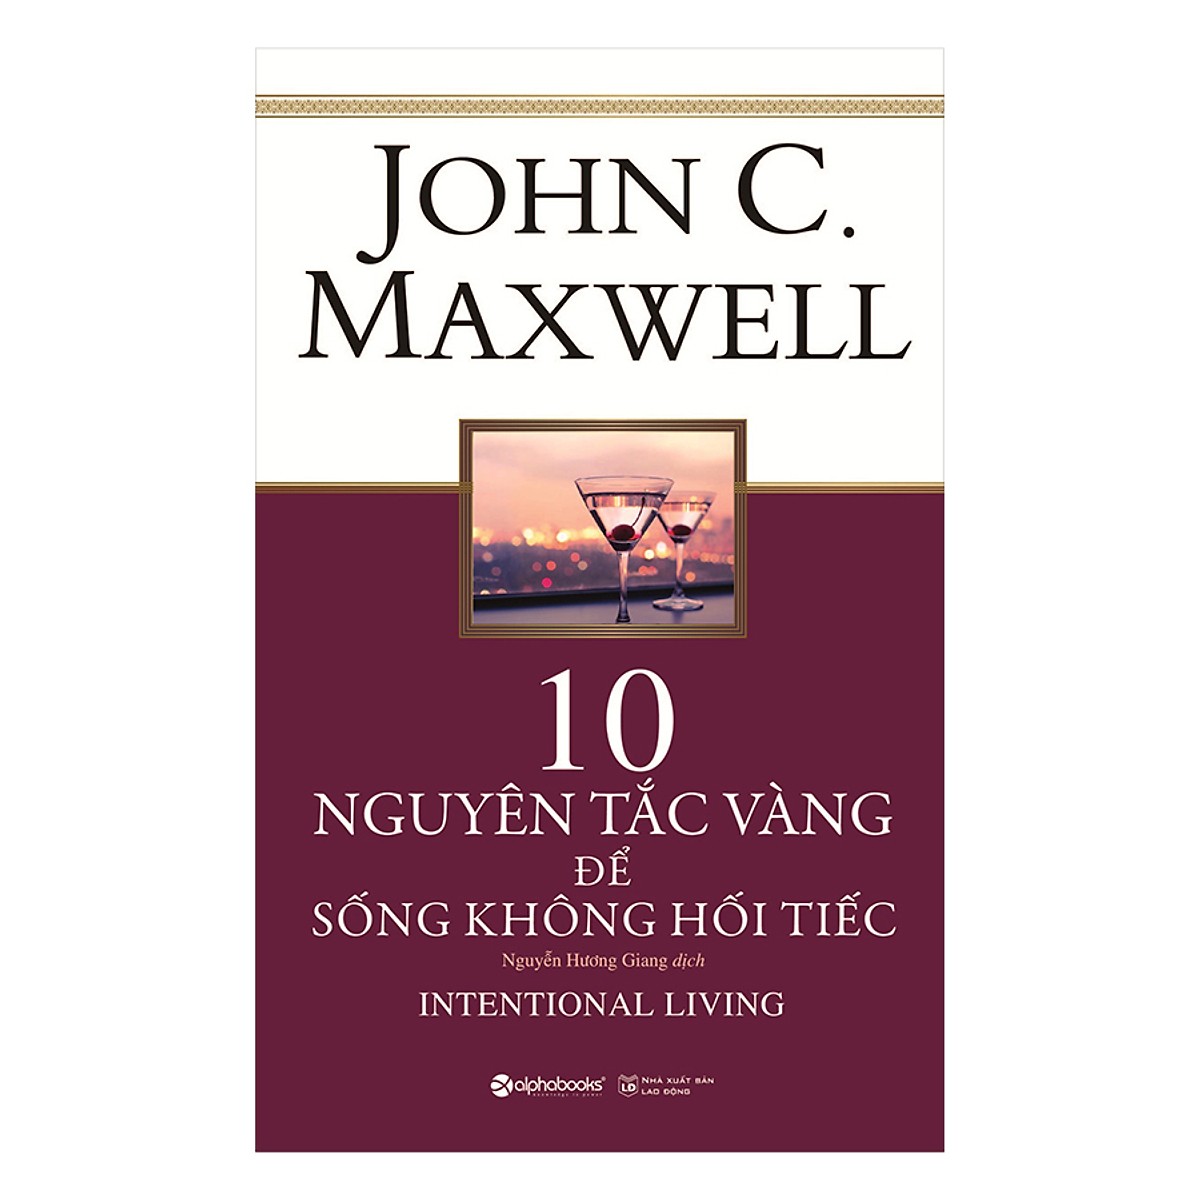 Bộ Sách Về Phát Triển Bản Thân Của John Maxwell Được Bán Chạy Nhất Hoa Kỳ (Gồm 5 cuốn: Phát Triển Kỹ Năng Lãnh Đạo + 10 Nguyên Tắc Vàng Để Sống Không Hối Tiếc + 15 Nguyên Tắc Vàng Về Phát Triển Bản Thân + Dám Ước Mơ, Biết Thực Hiện + Không Giới Hạn) Quà T